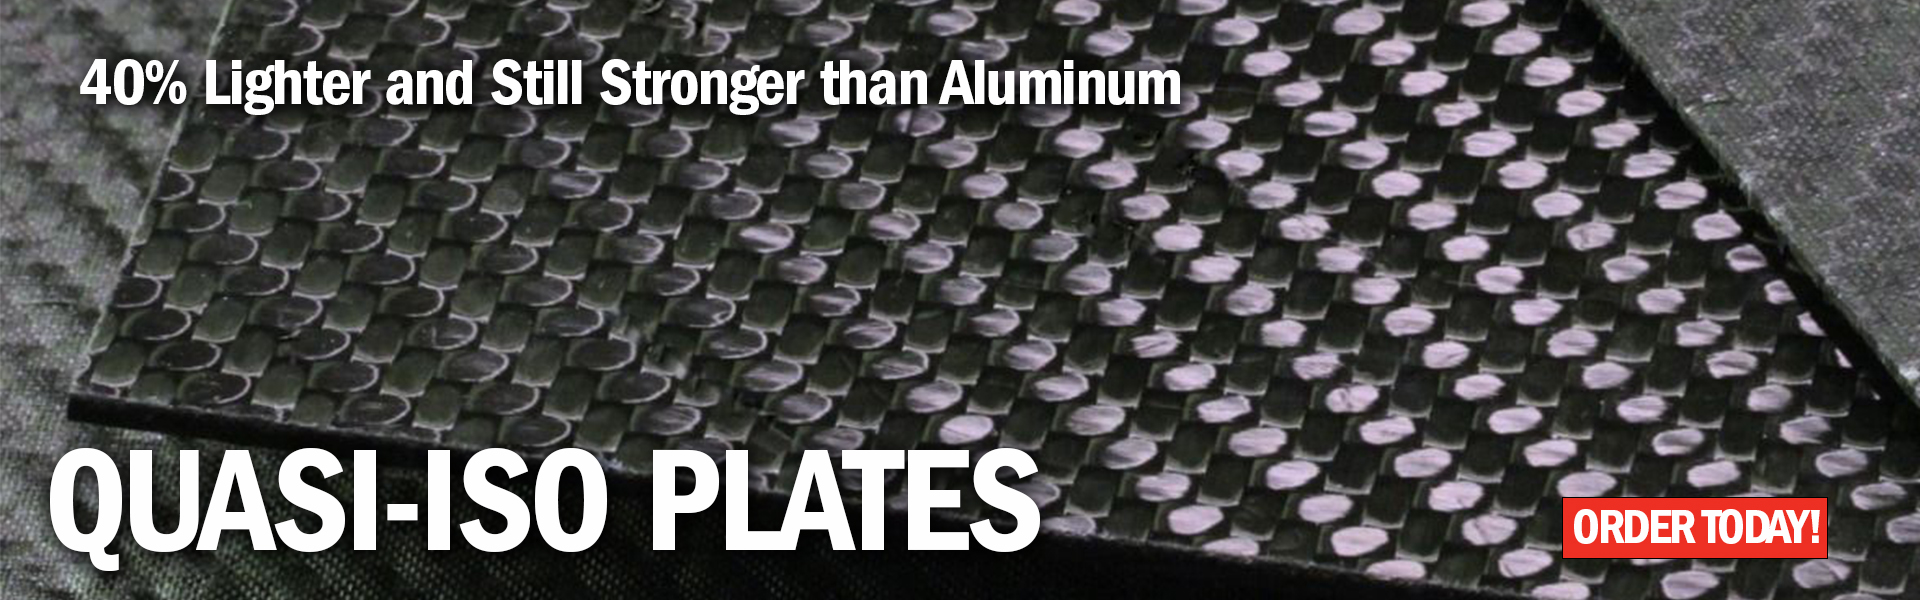 Quasi-iso Carbon Fiber Plates